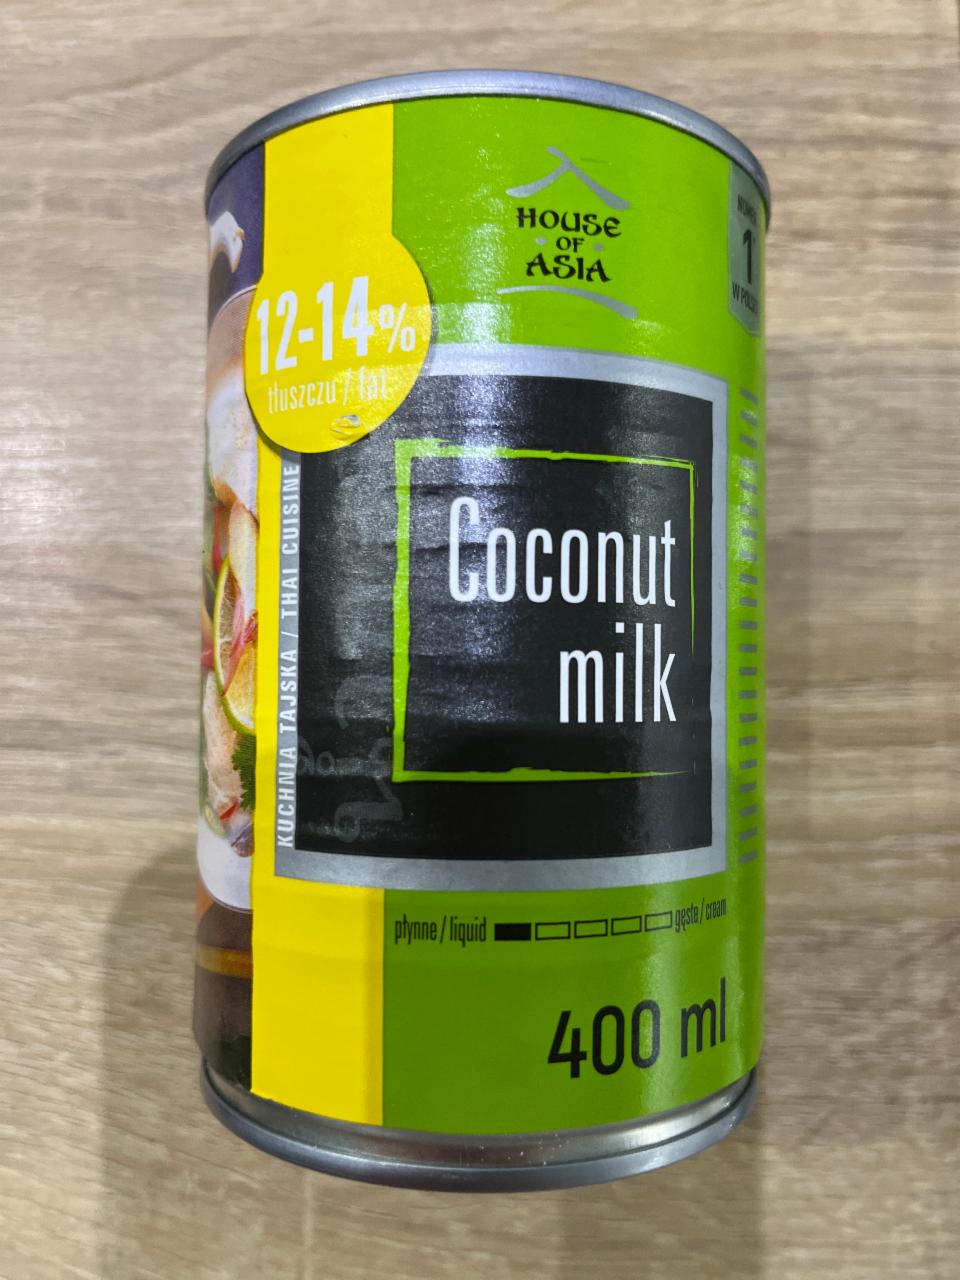 Фото - Кокосовое молоко 12-14% Coconut Milk House of Asia